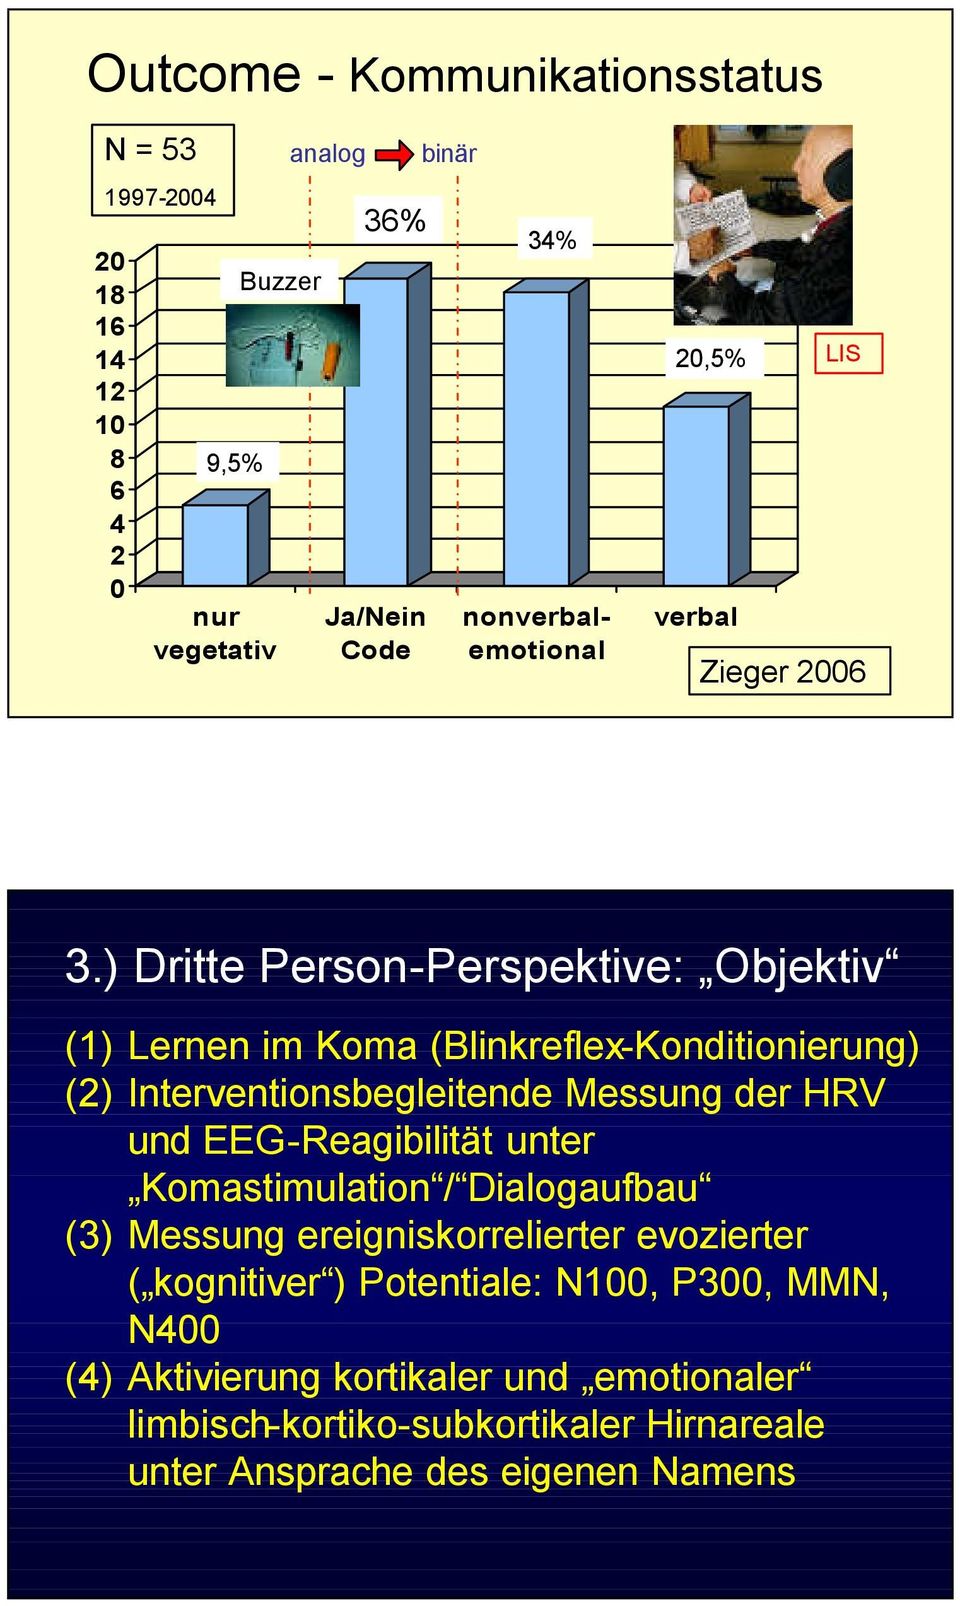 ) Dritte Person-Perspektive: Objektiv (1) Lernen im Koma (Blinkreflex-Konditionierung) (2) Interventionsbegleitende Messung der HRV und